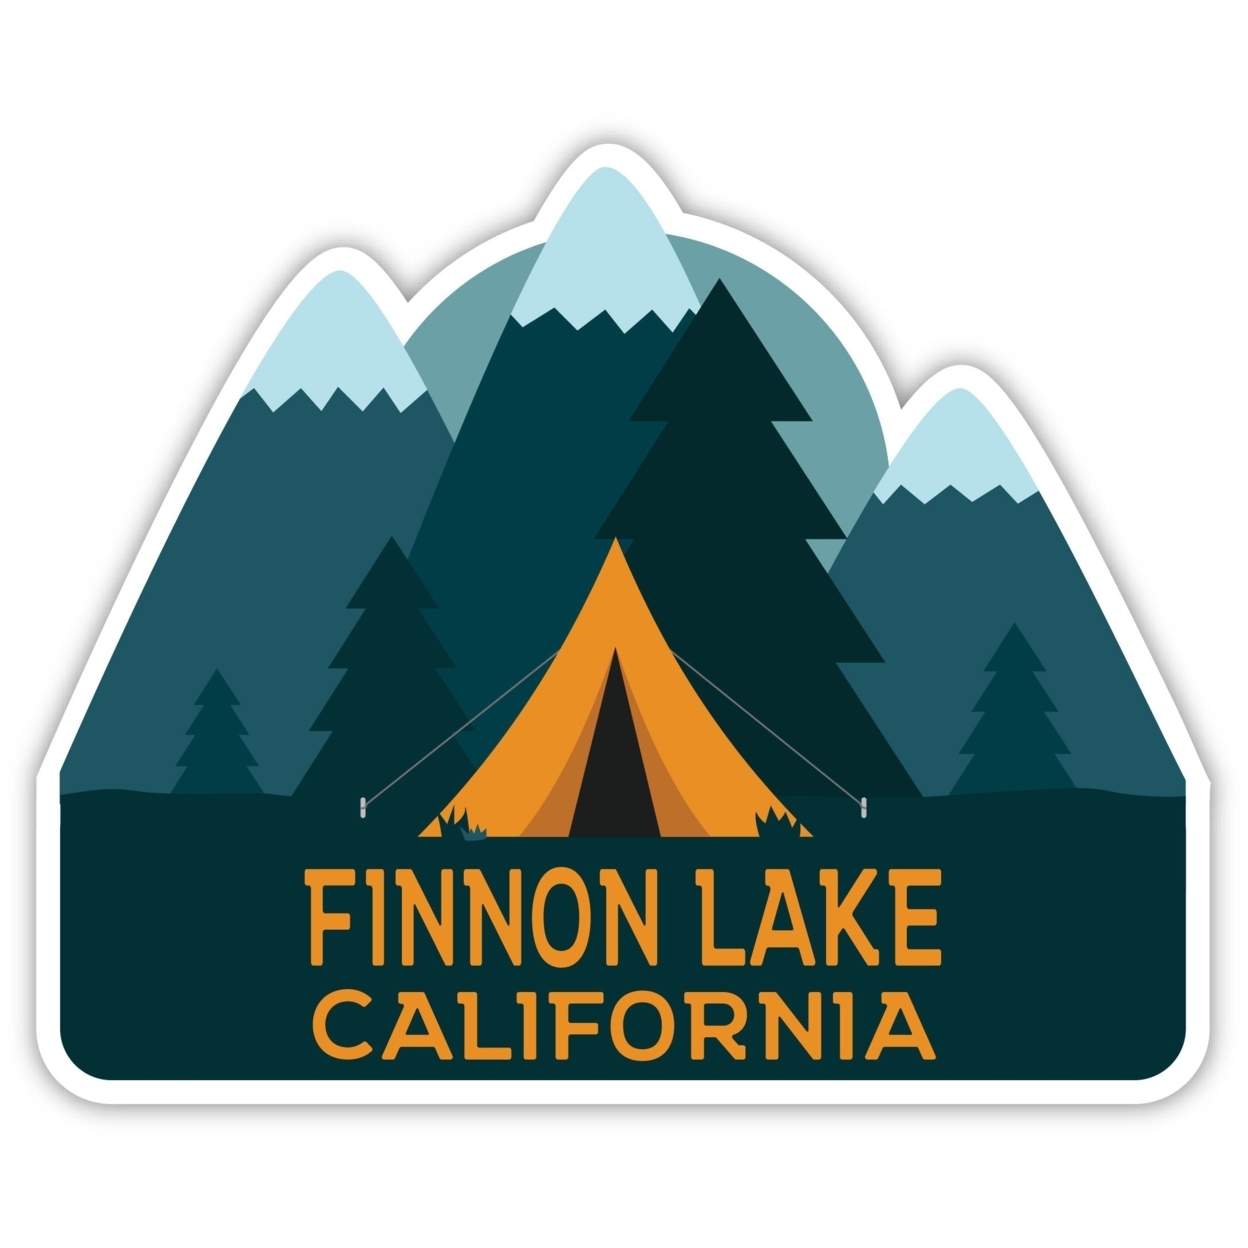 Finnon Lake California Souvenir Decorative Stickers (Choose Theme And Size) - Single Unit, 4-Inch, Tent